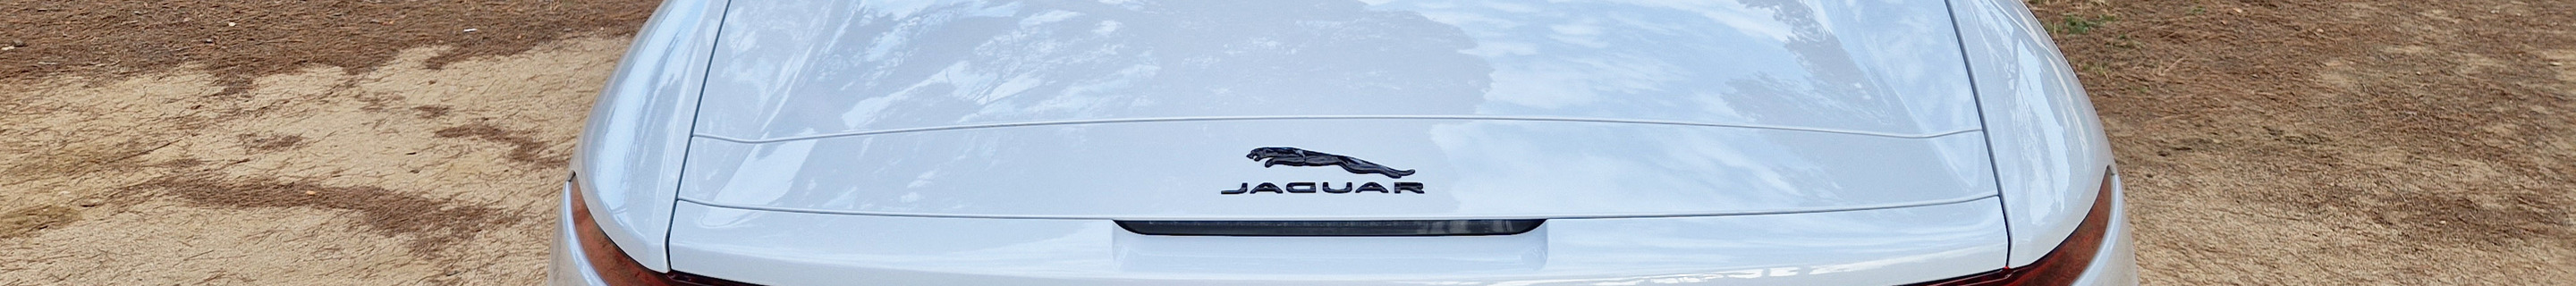 Jaguar F-TYPE P450 AWD Convertible 2020